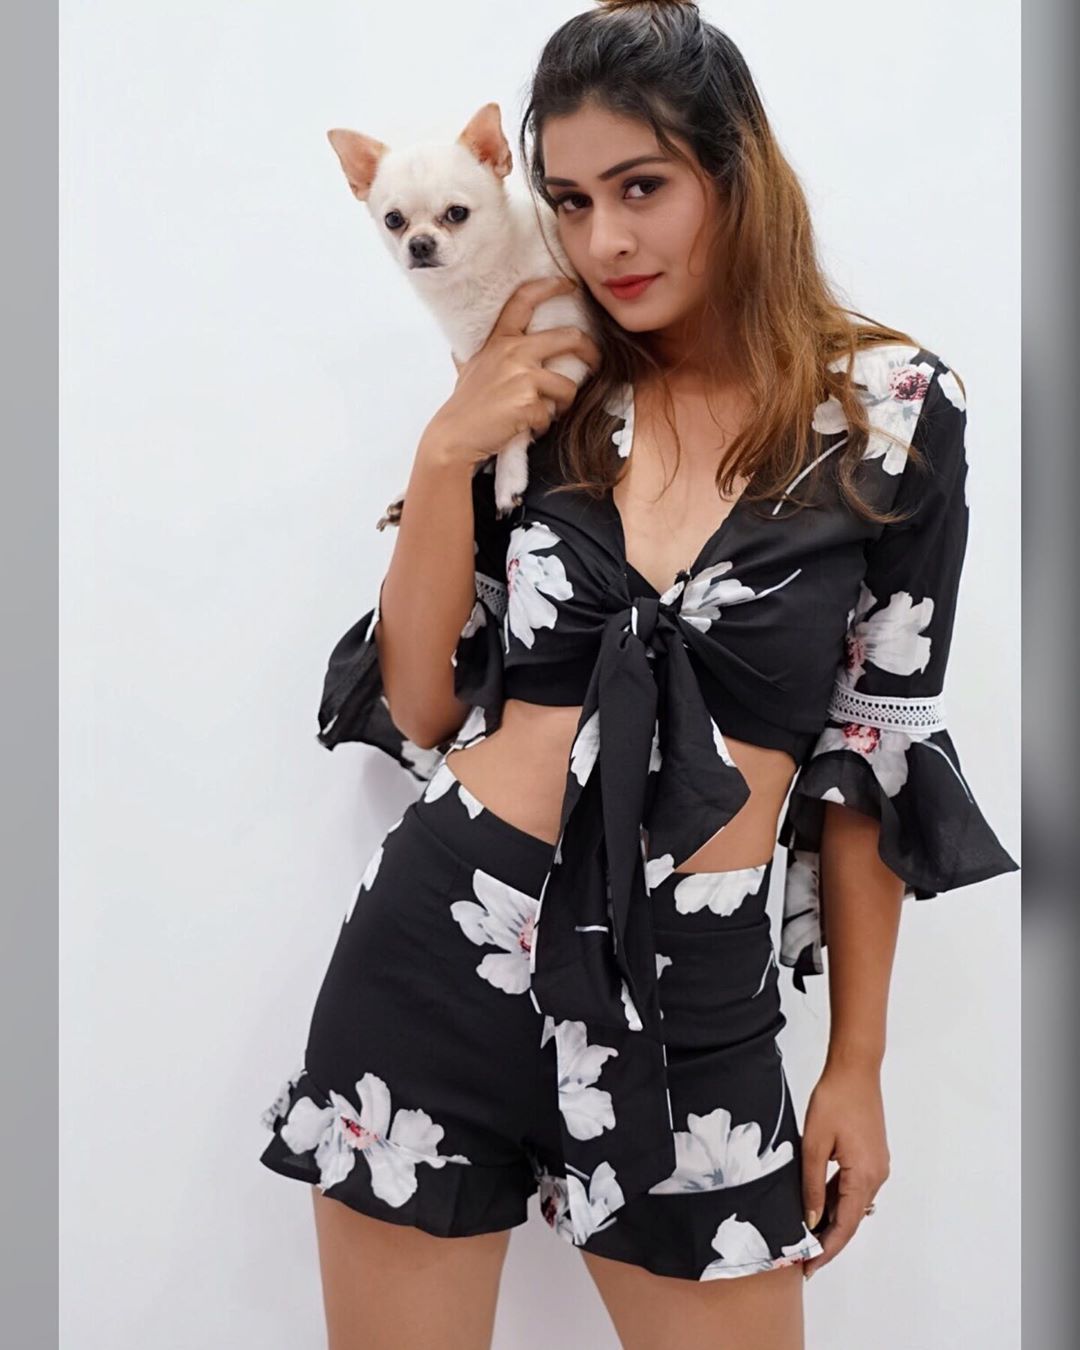 Payal Rajput Sexy Stills With Her Puppy